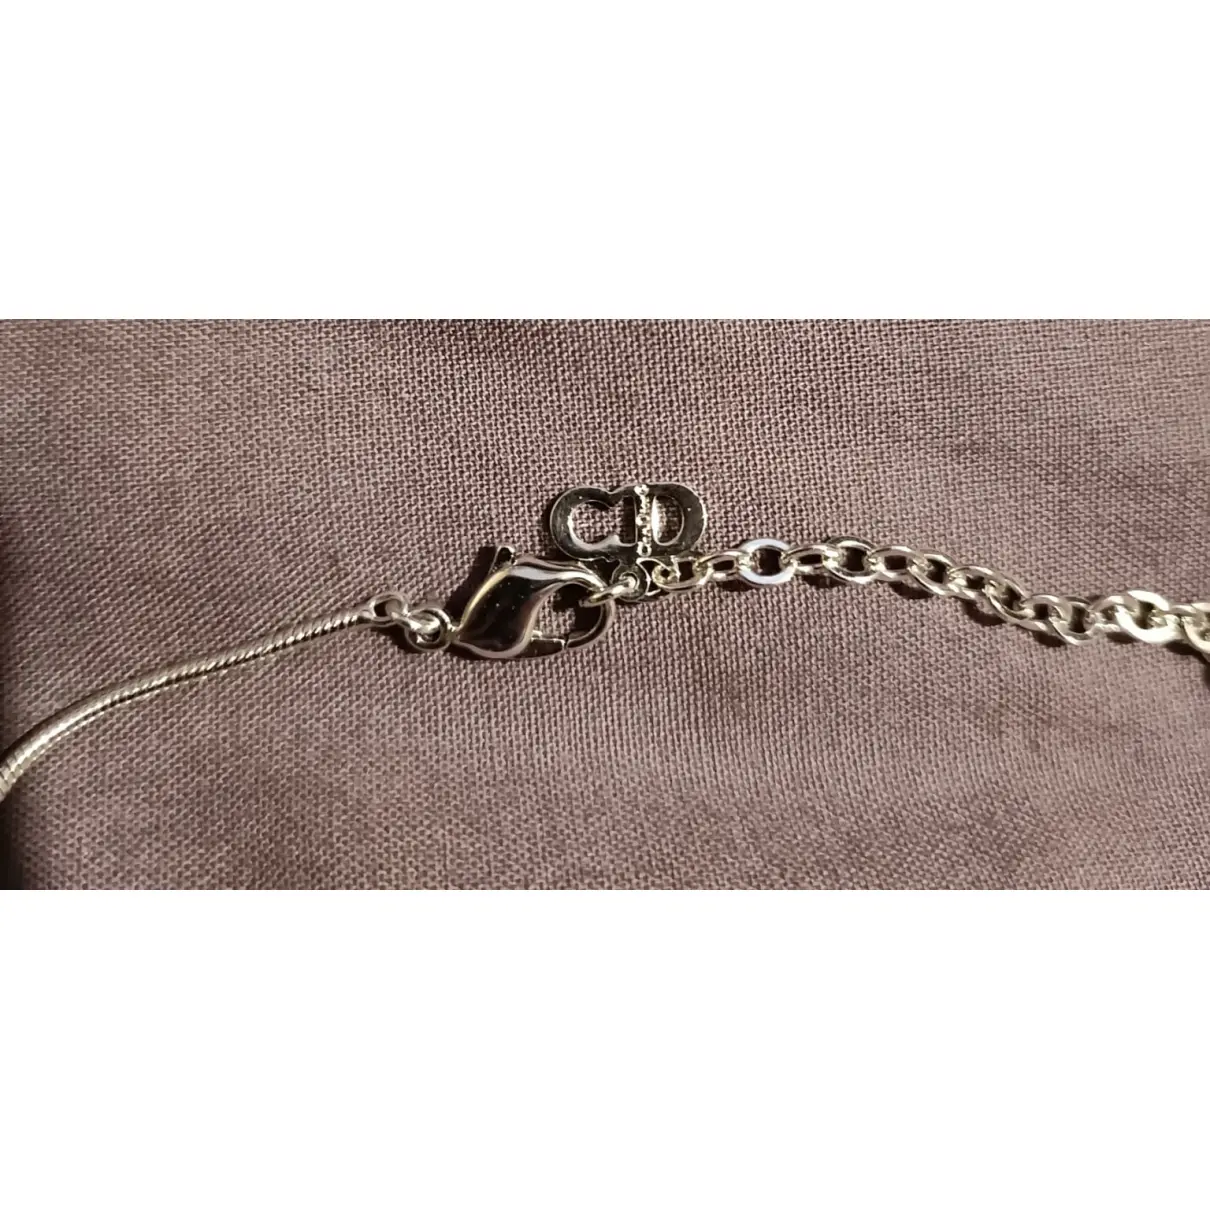 Luxury Dior Necklaces Women - Vintage